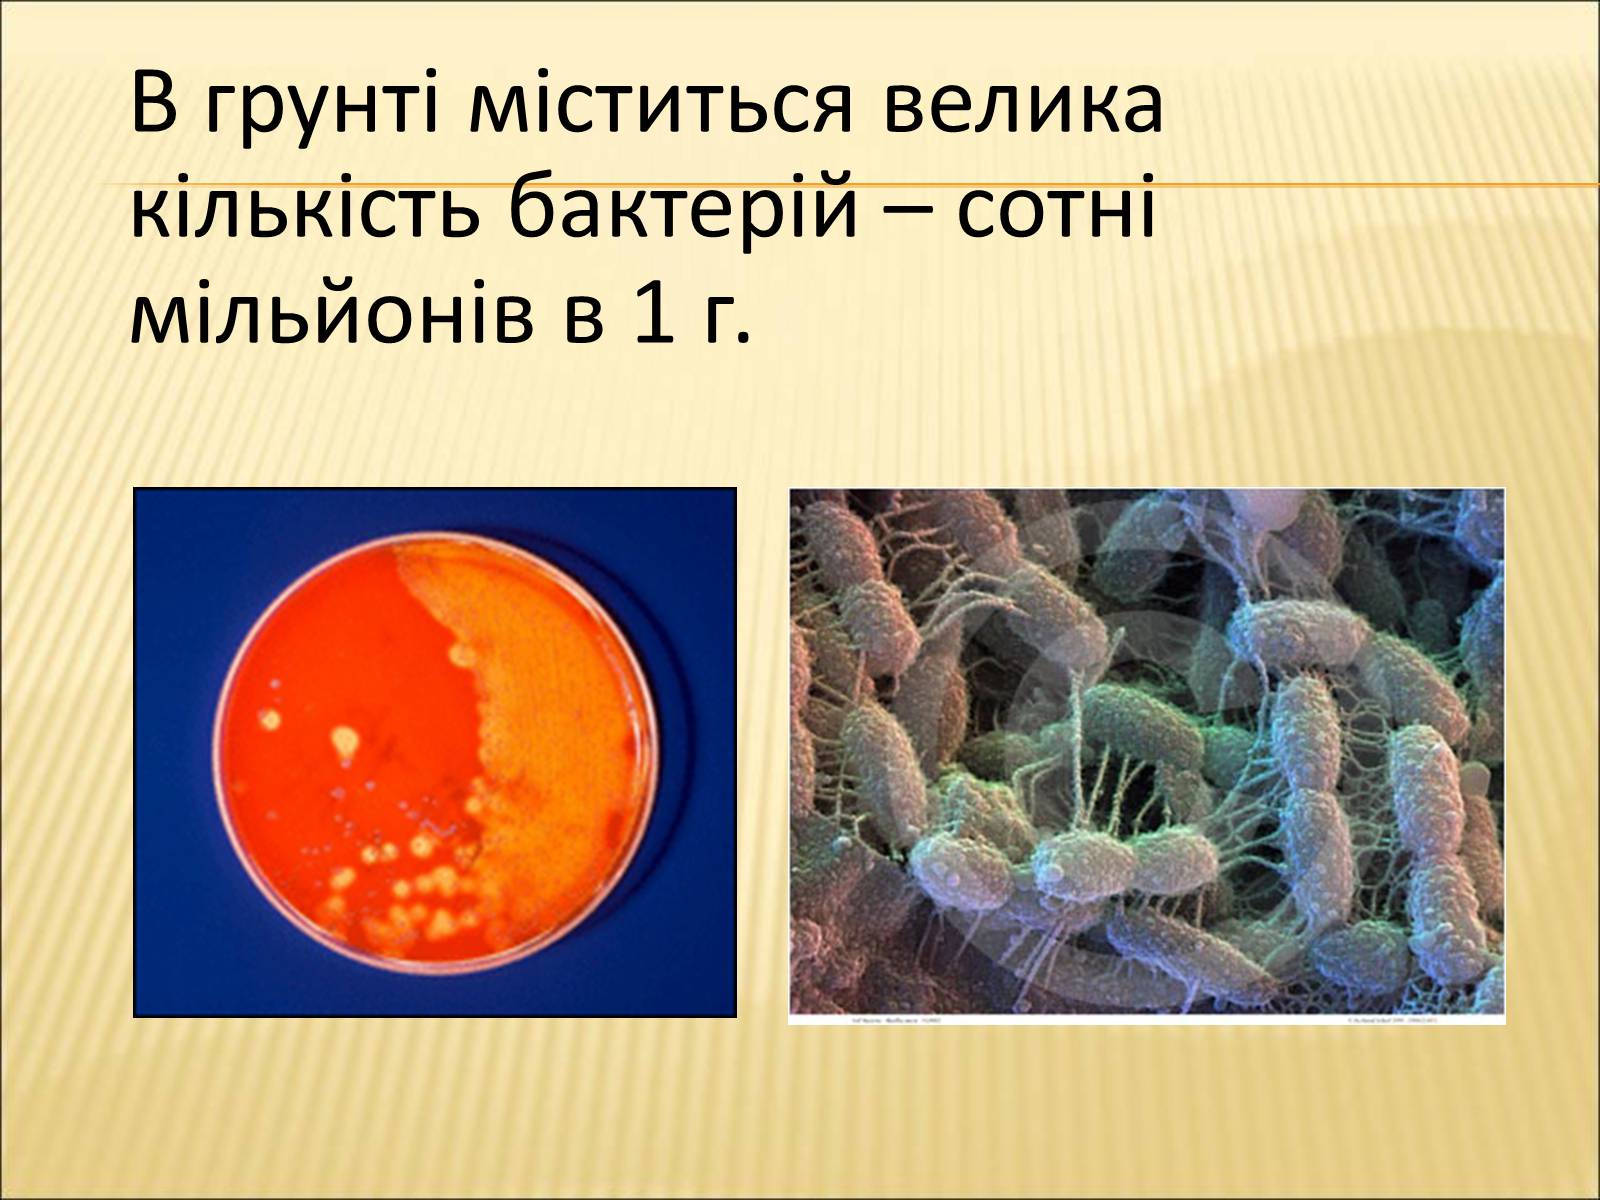 Роль бактерий гниения в природе. Микроорганизмы в природе. Бактерии в жизни человека. Почвенные микроорганизмы. Бактерии в природе и жизни человека.